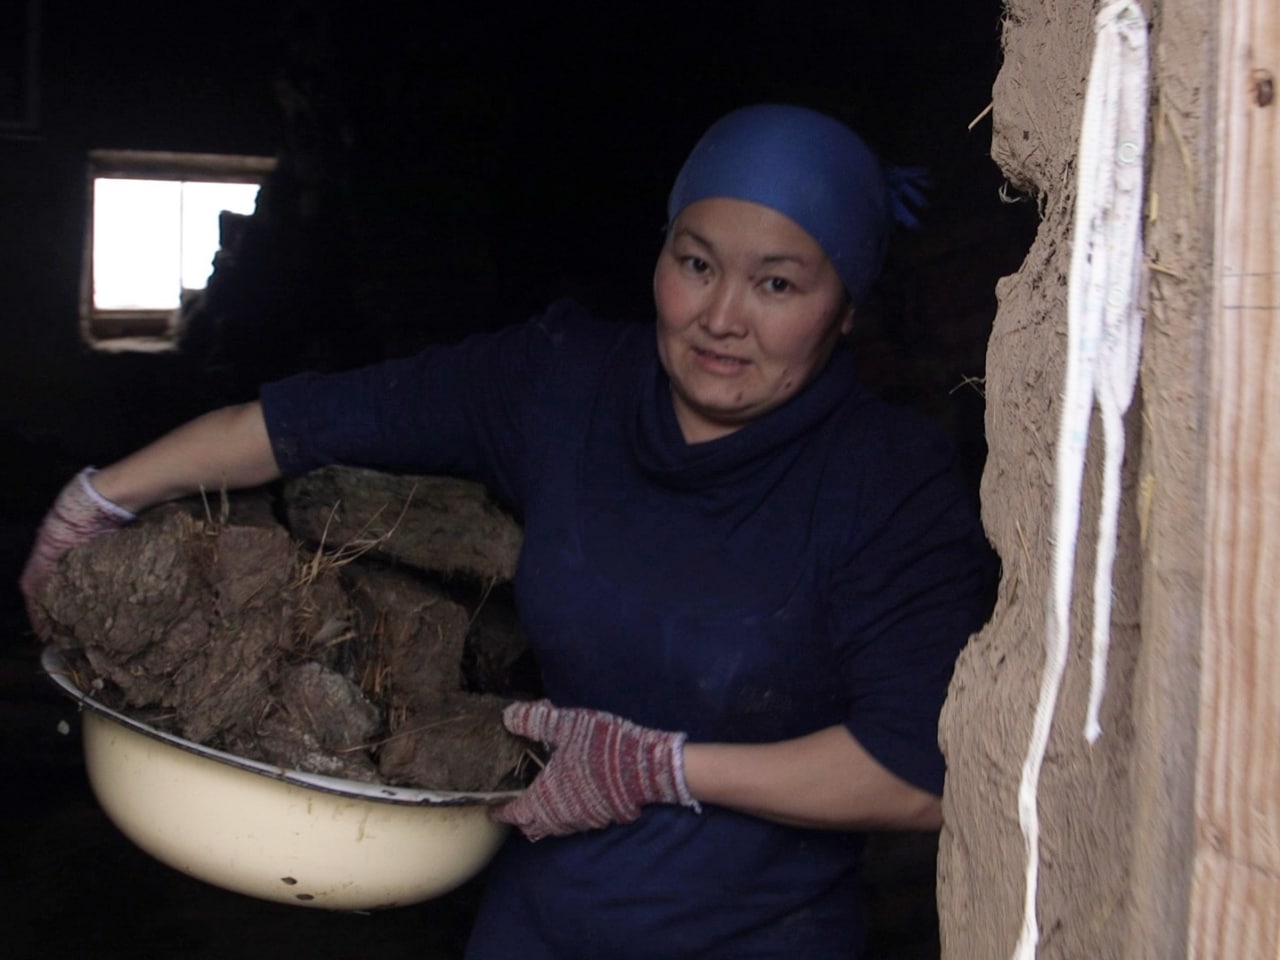 До каких пор от узбекских женщин будет пахнуть кизяком?, — журналист о проблемах с теплом в регионах